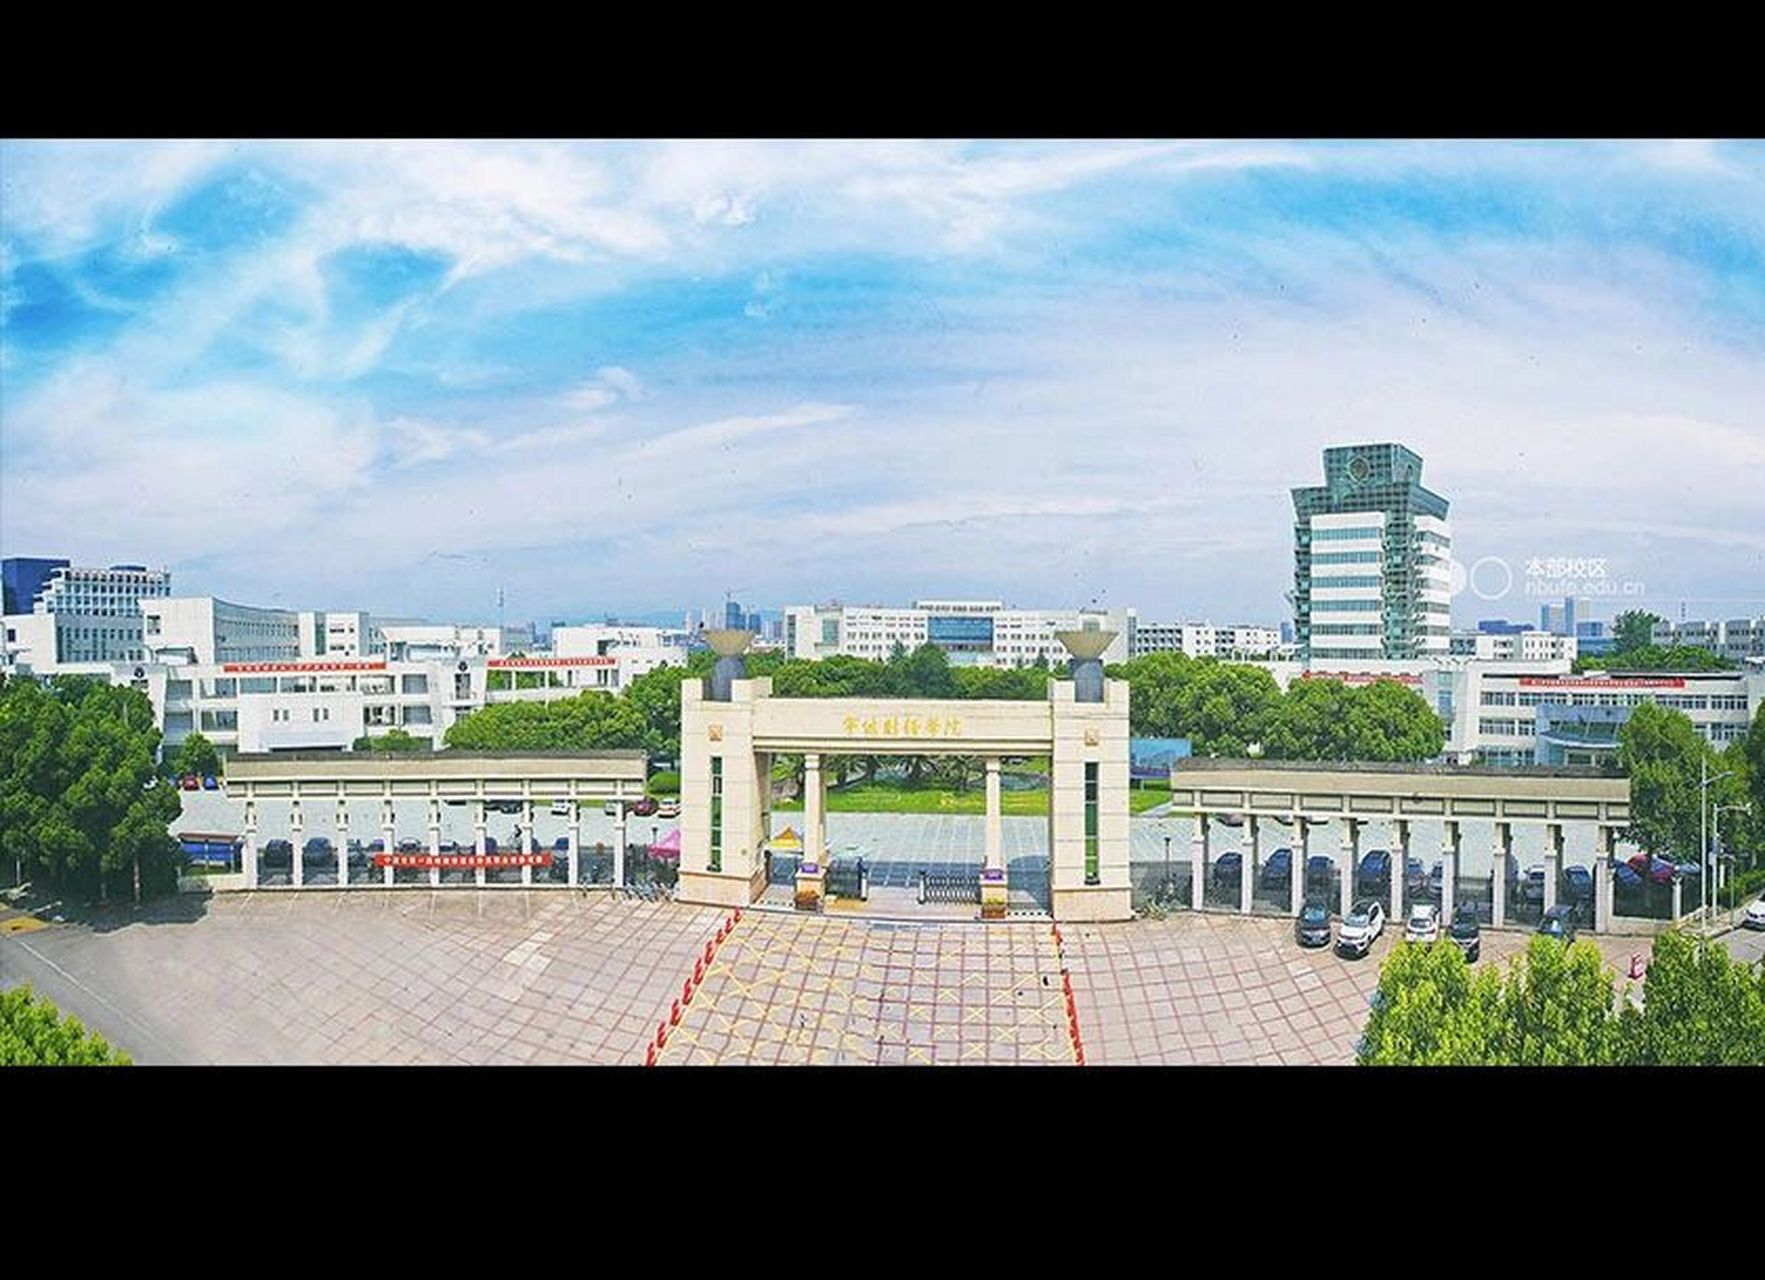 宁波财经学院校园风光图 宁波财经学院坐落于国家历史文化名城,现代化